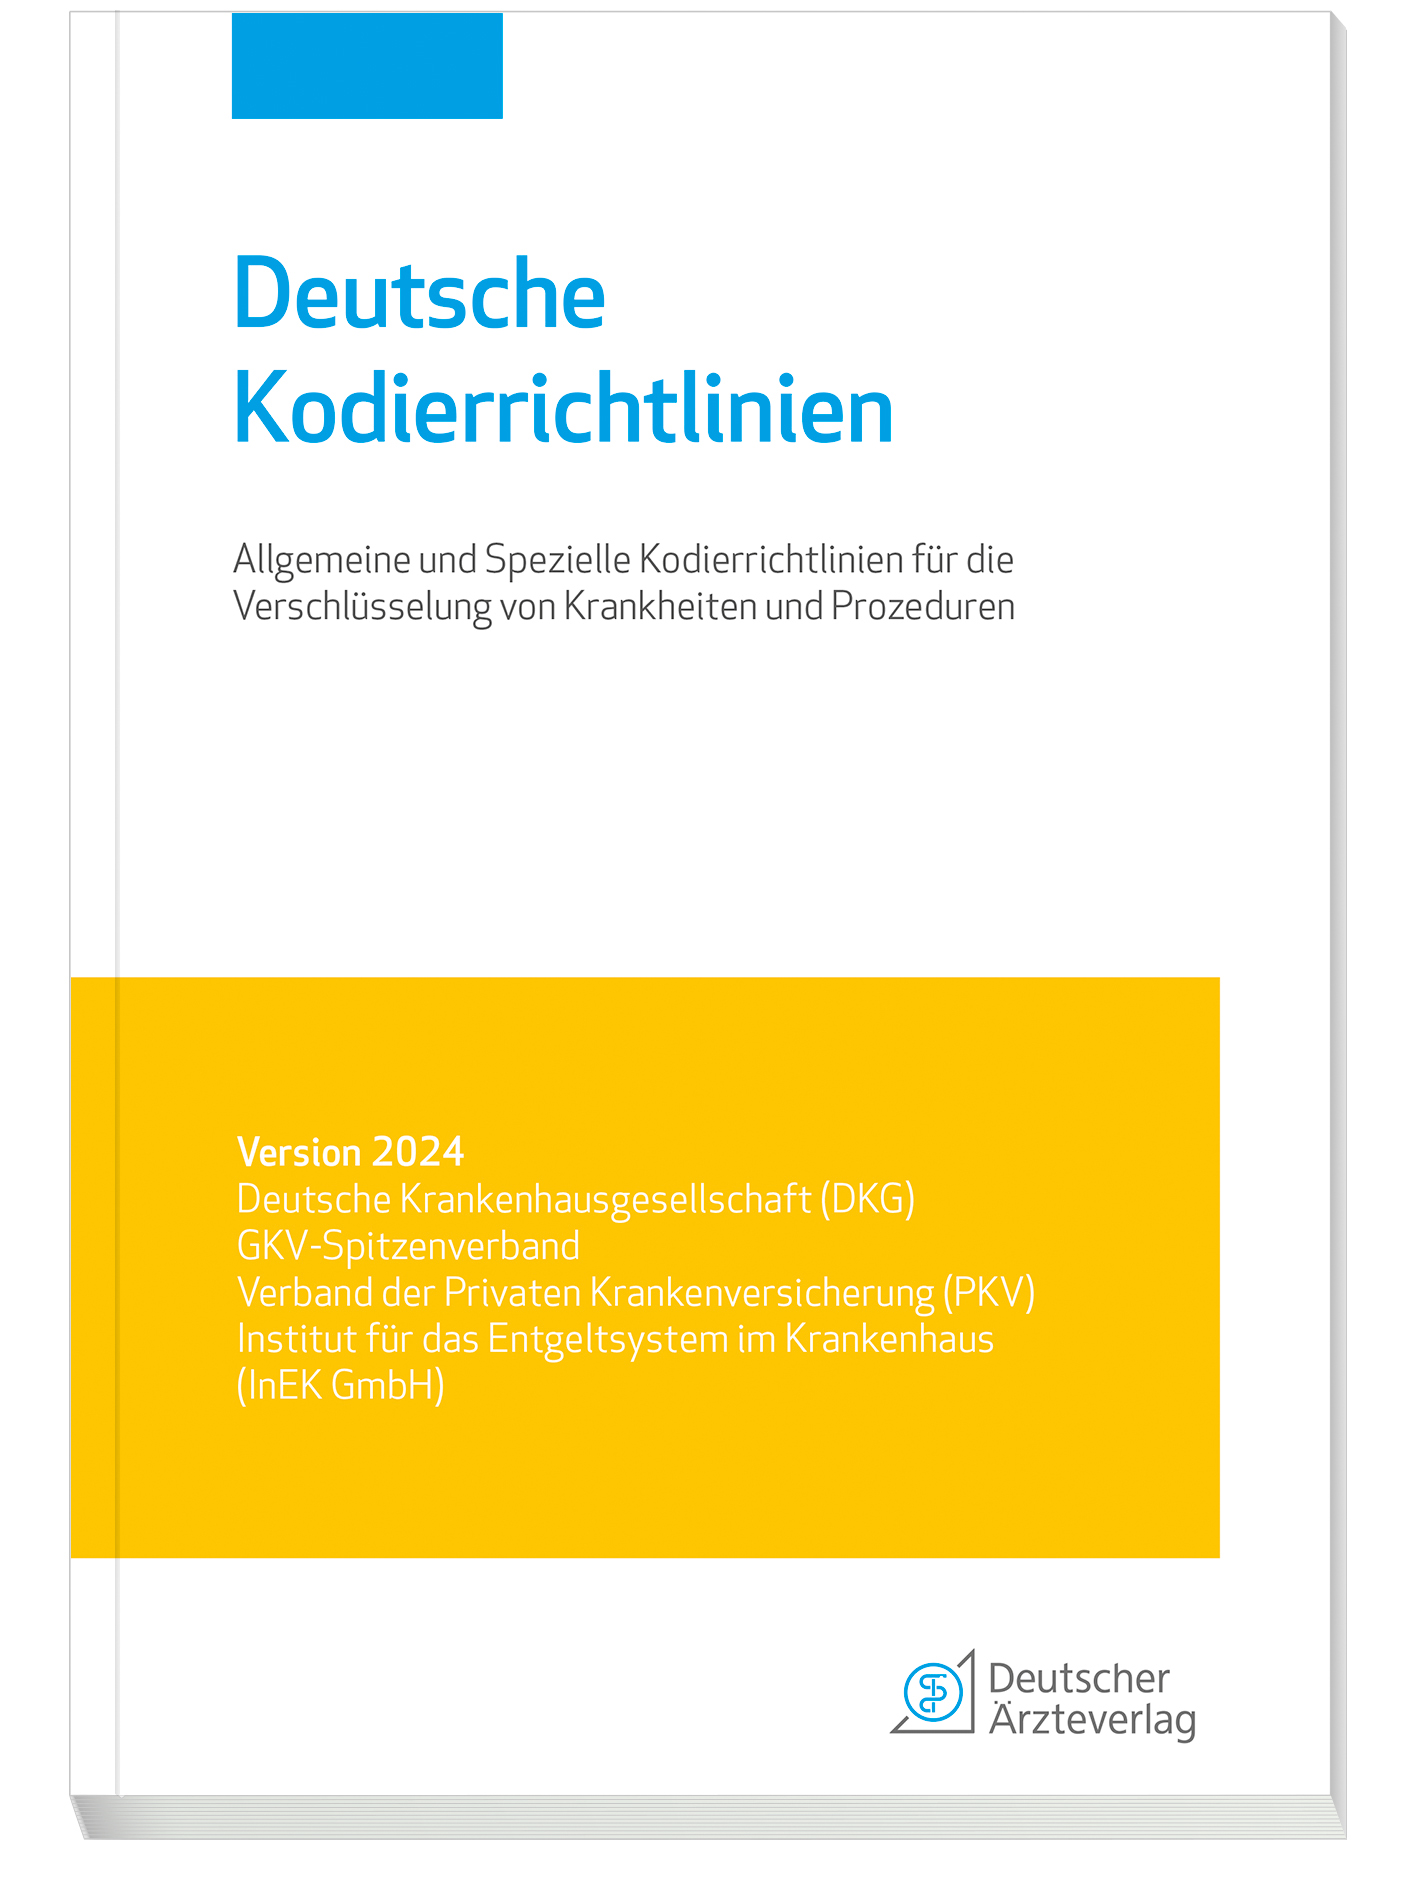 Deutsche Kodierrichtlinien 2024